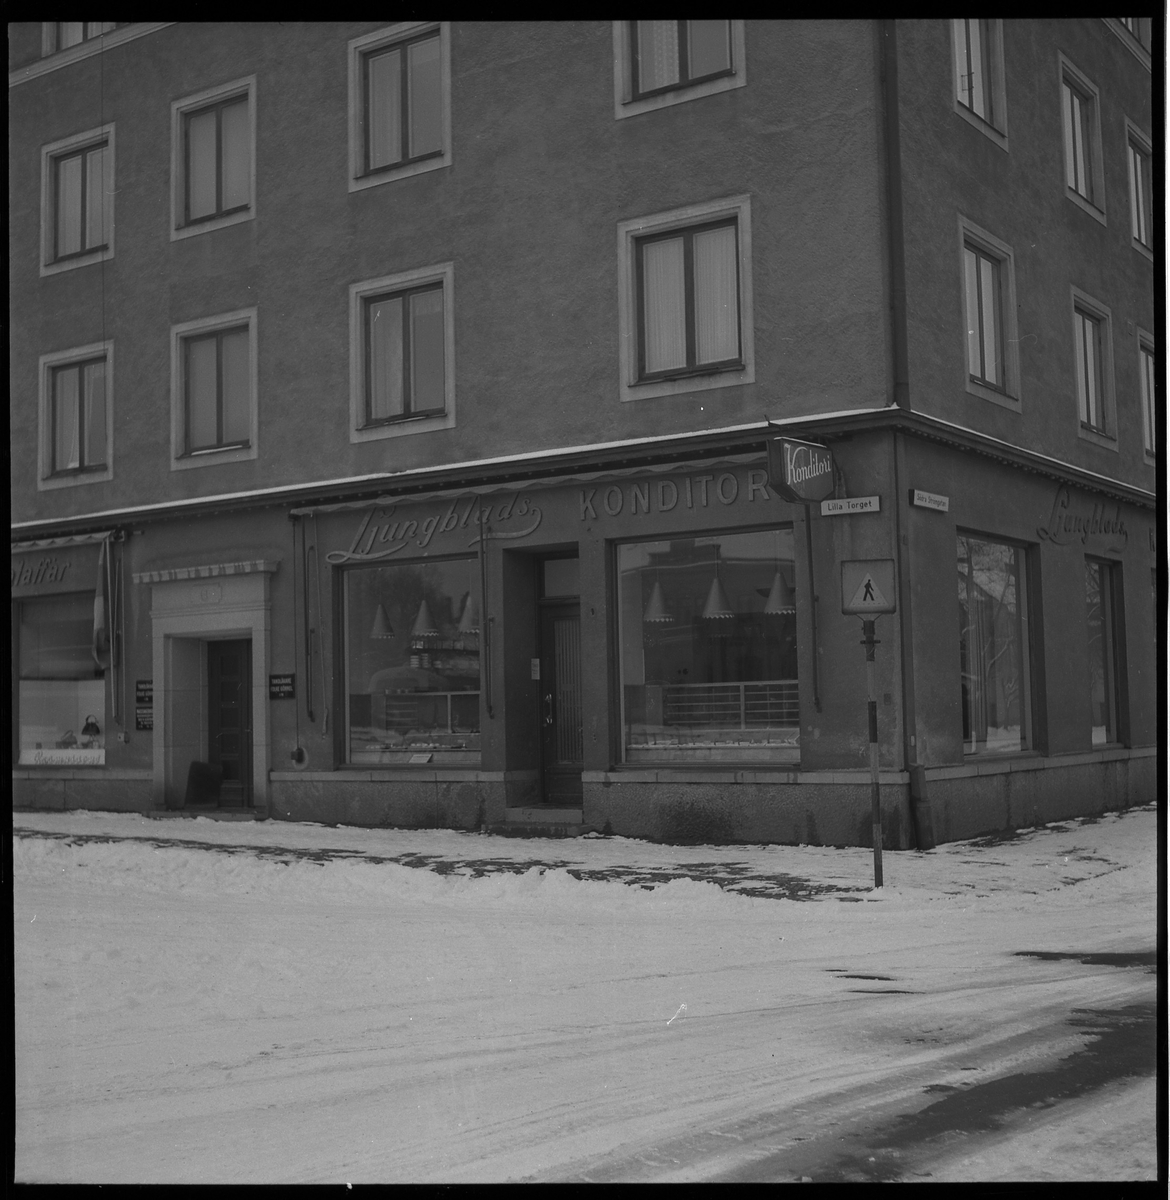 LJungblads Konditori, Lilla torget, kv Pelikan. Jan 1951